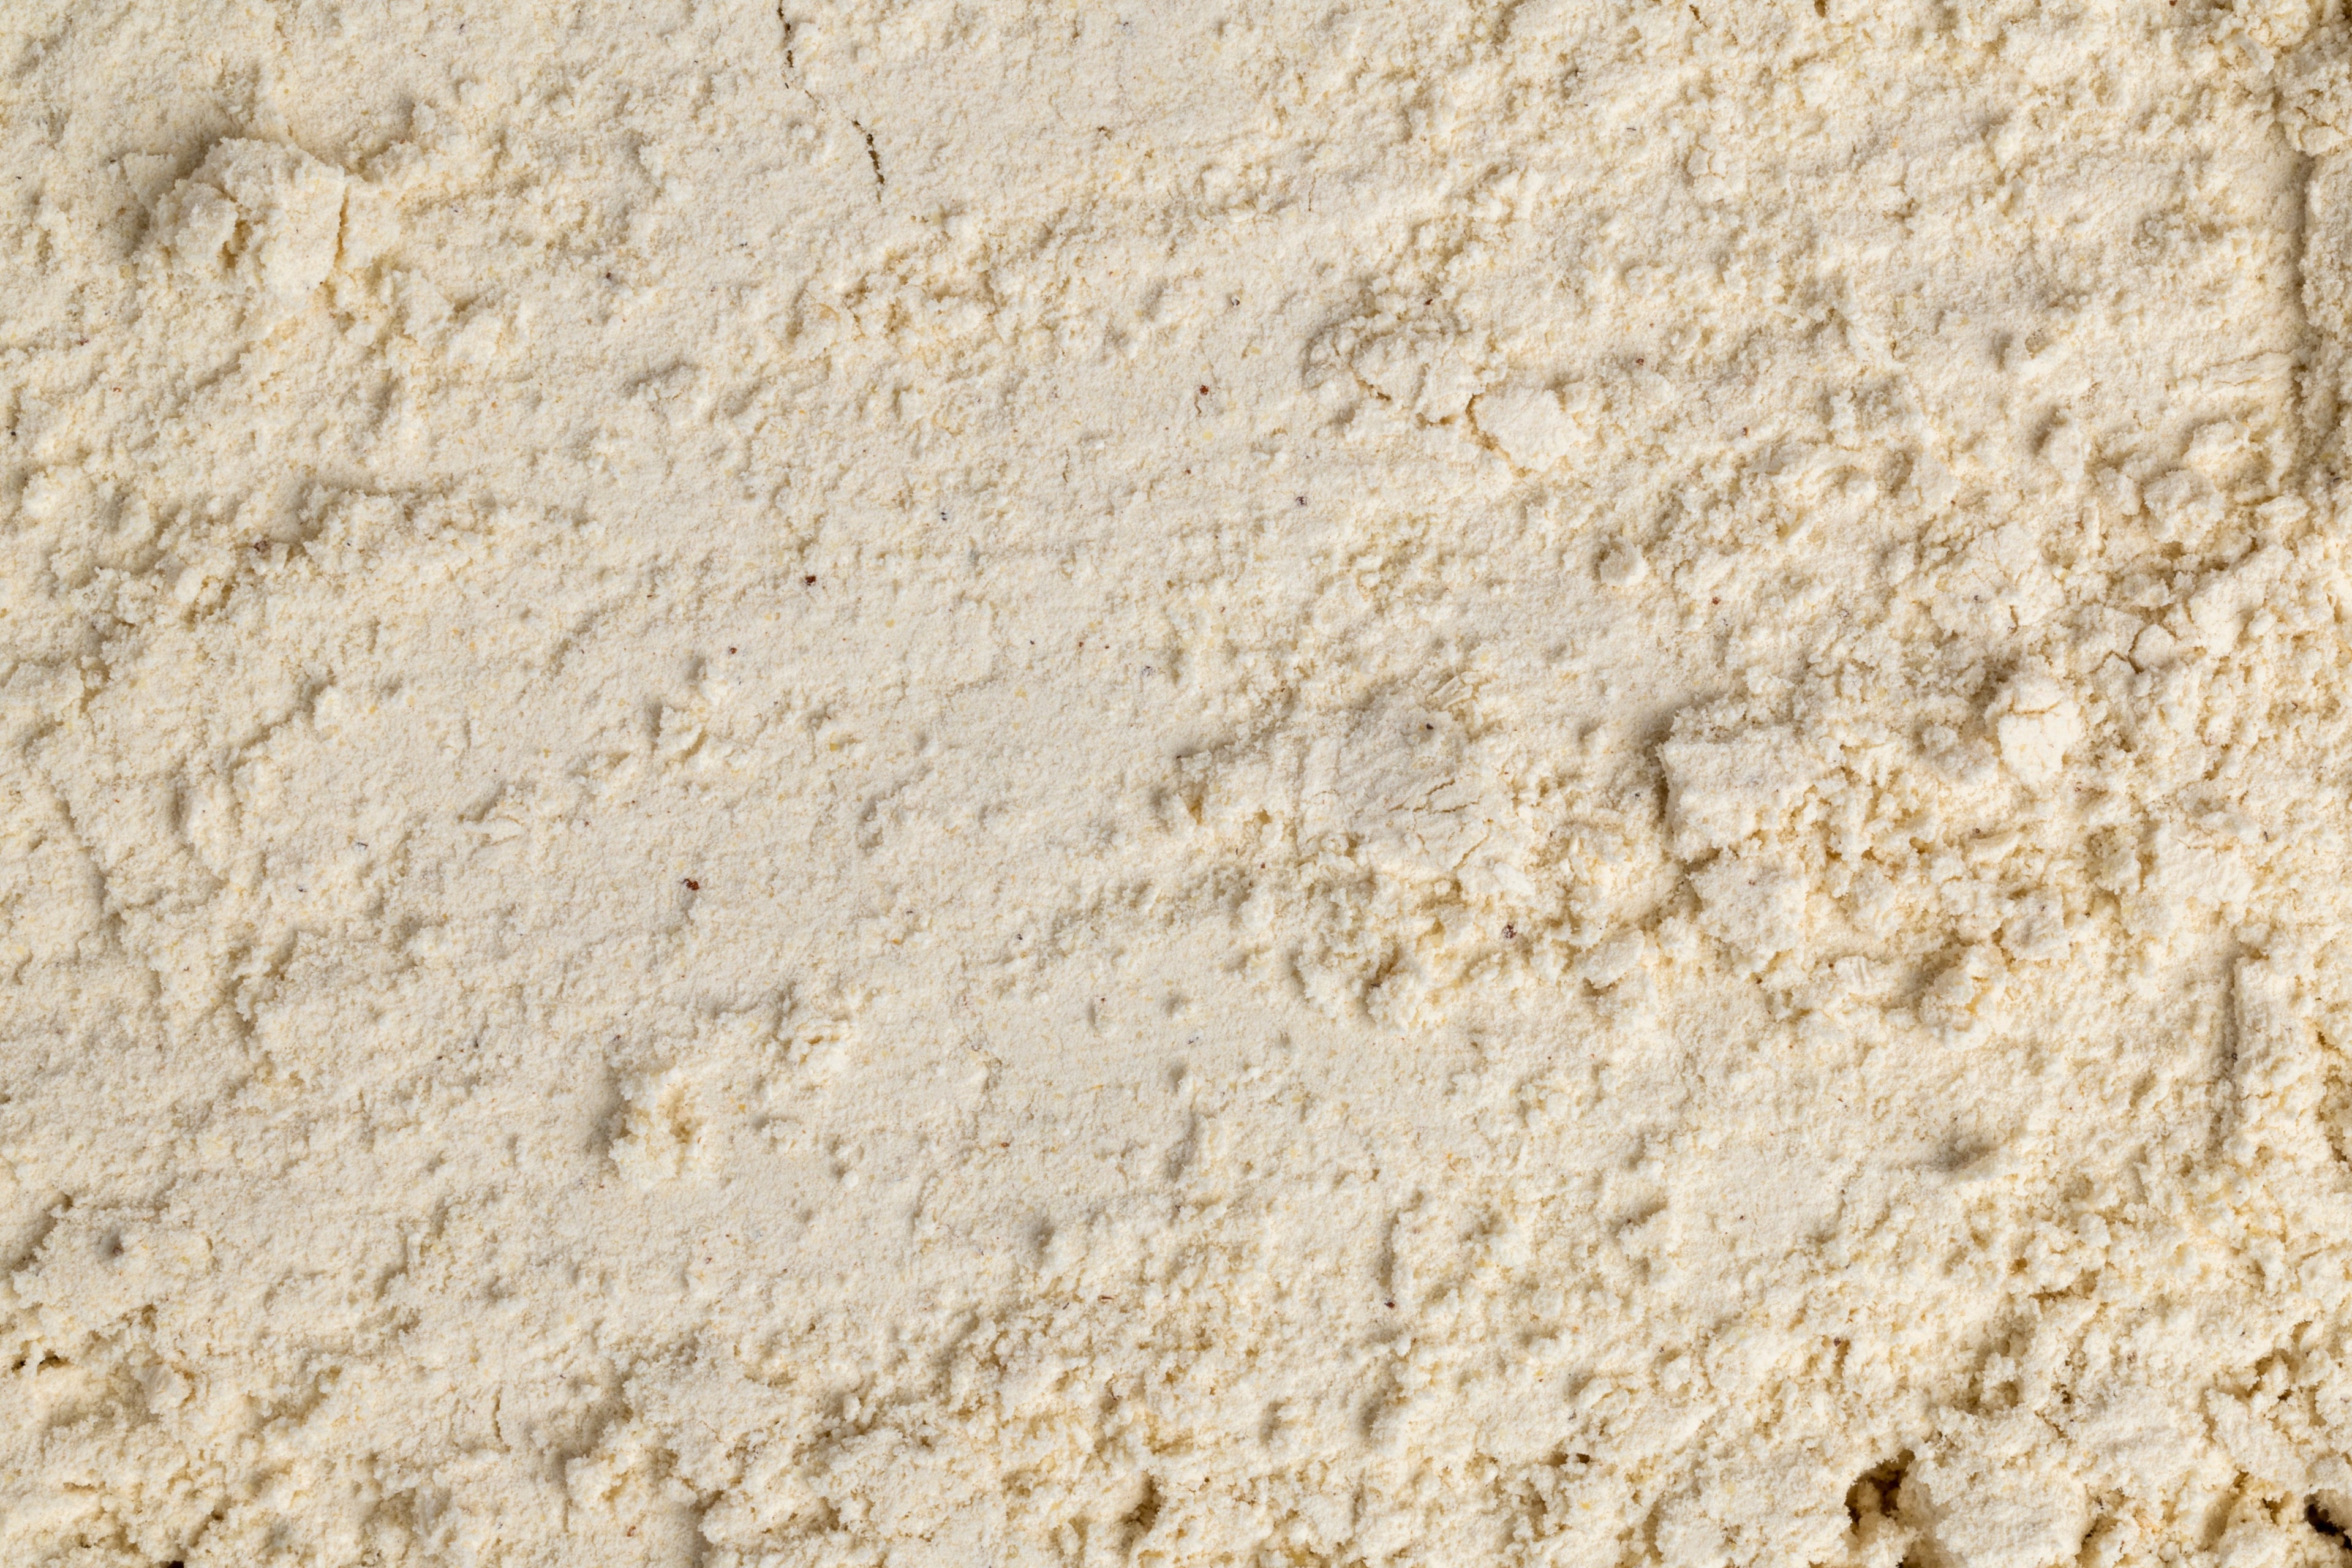 Foxtail Millet Flour / कांगणी